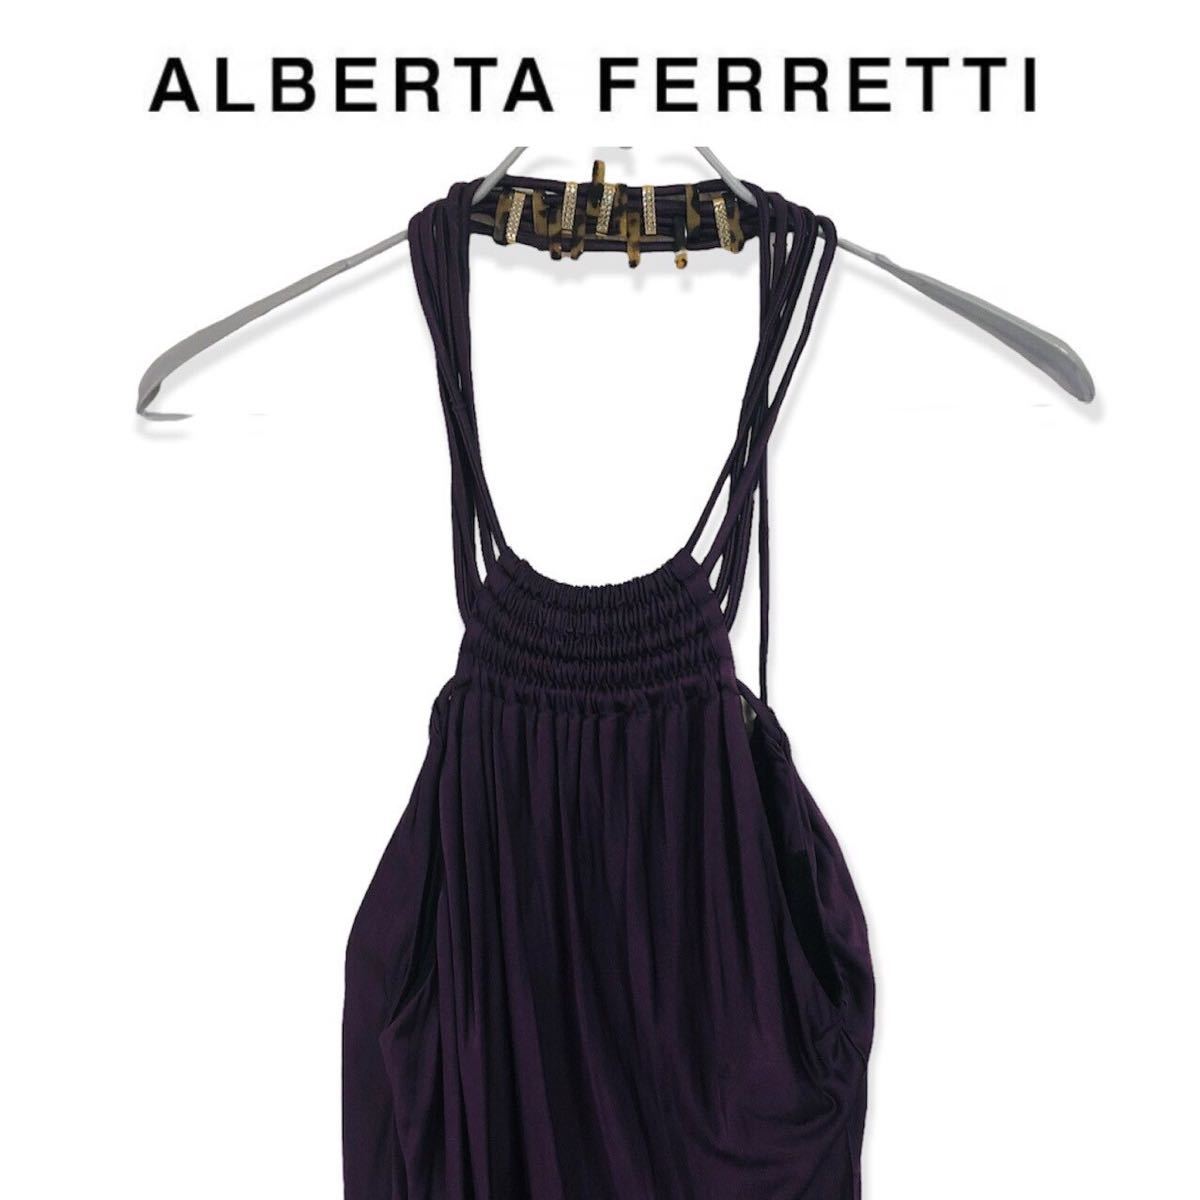  Alberta Ferretti ALBERTA FERRETTI высококлассный платье длинный One-piece лиловый вечернее платье Италия производства бренд свадьба XS